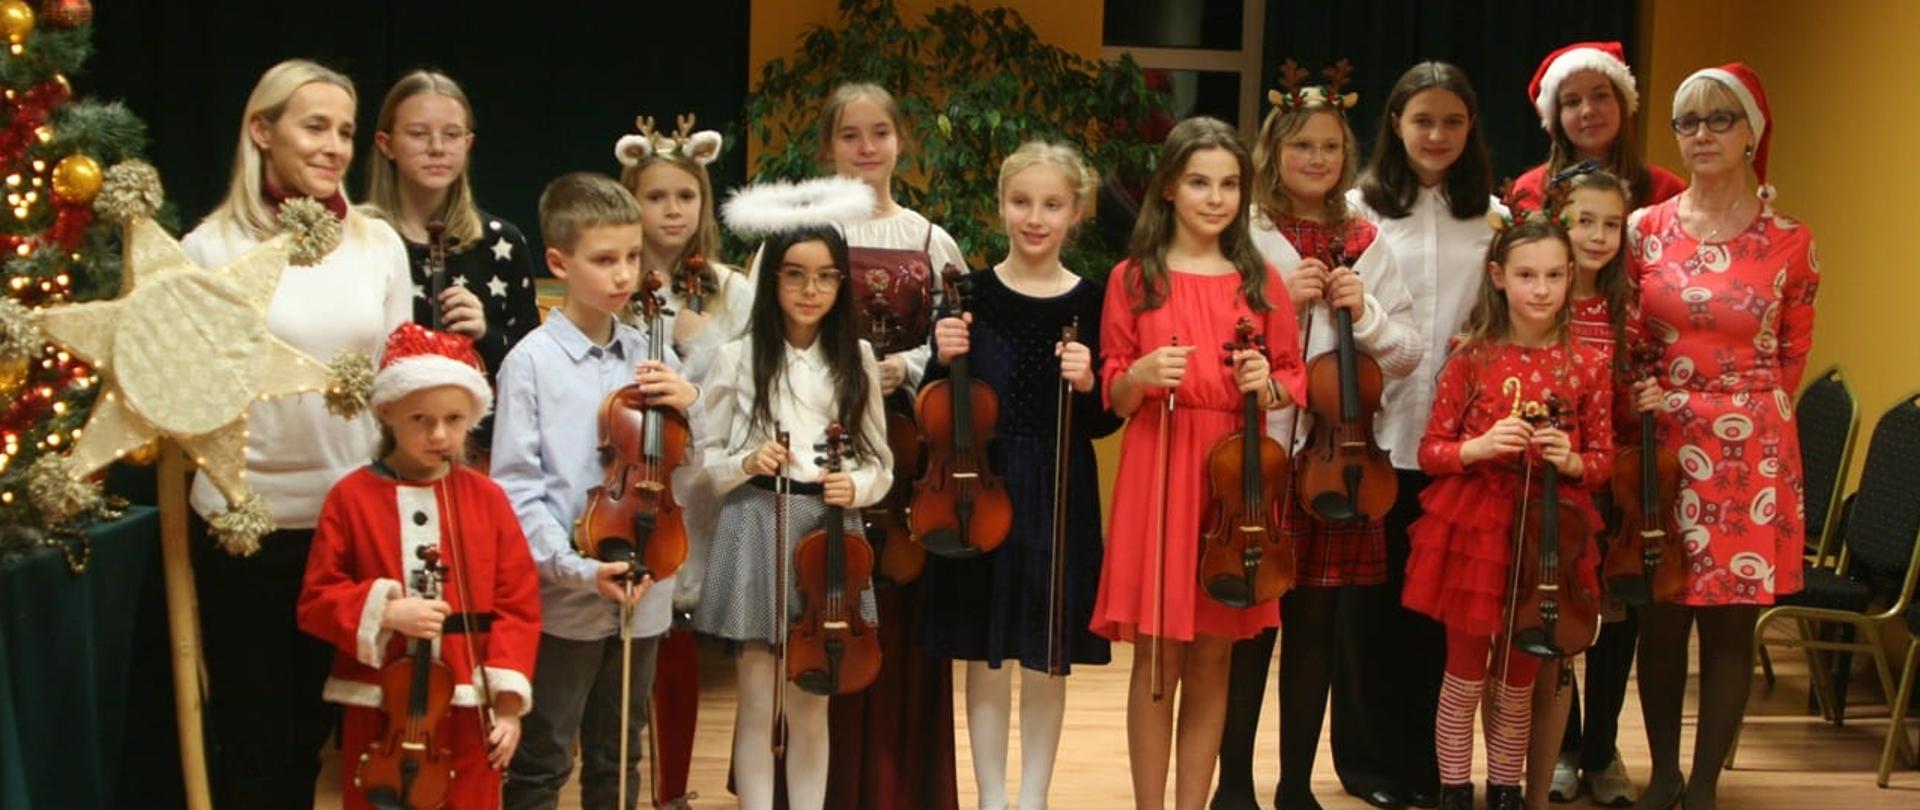 Grupowe zdjęcie uczniów klasy skrzypiec. Uczniowie trzymają w dłoniach skrzypce i smyczki